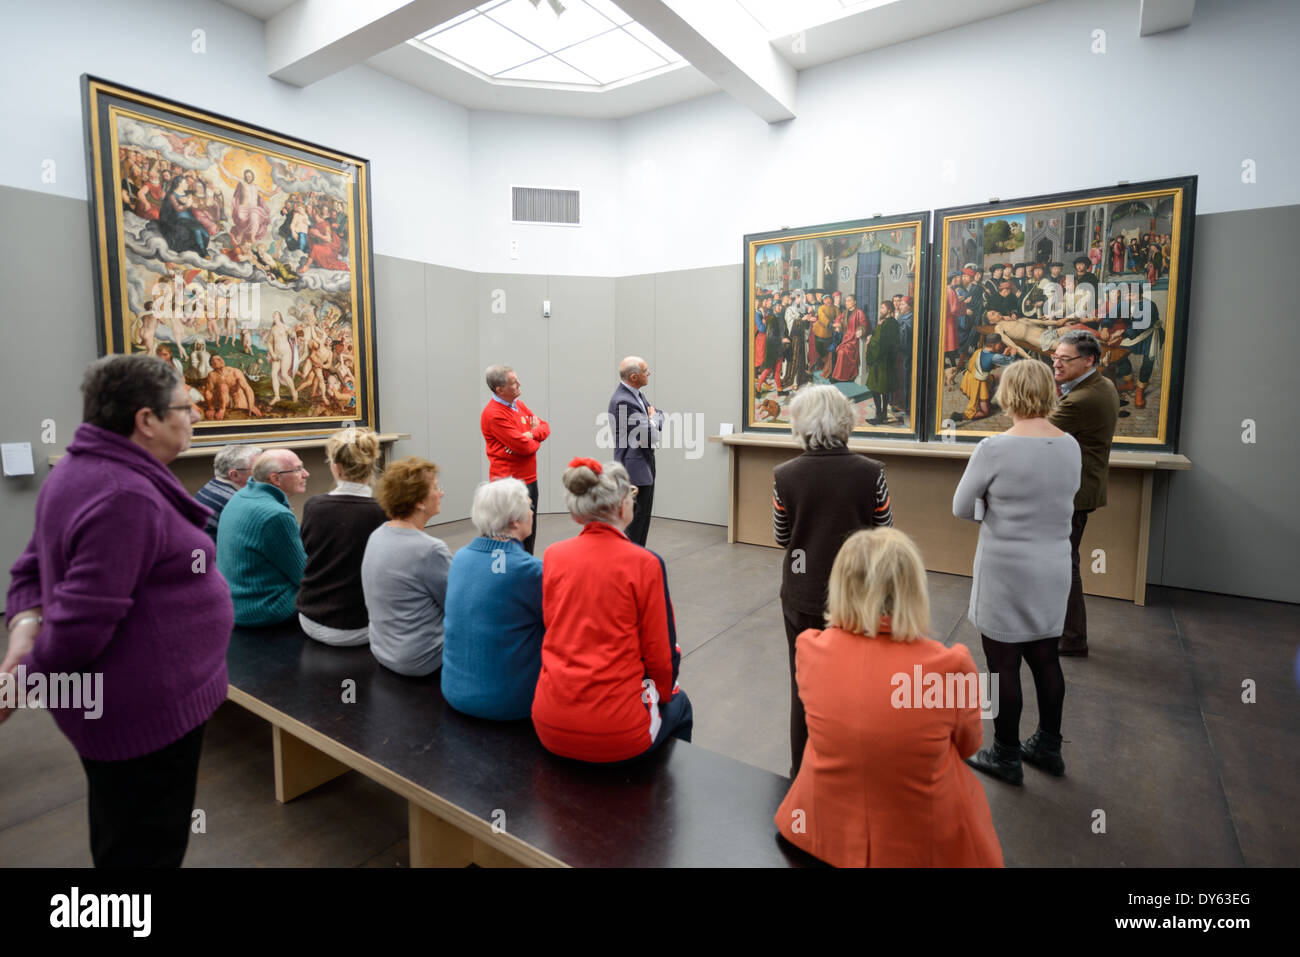 BRUGES, Belgique - Communauté flamande et de la peinture belge à l'affiche au Musée Groeninge, un musée d'art municipal de Bruges, Belgique. Le musée est célèbre pour sa collection d'art Primitif Flamand, avec d'autres chefs-d'autres périodes. Banque D'Images